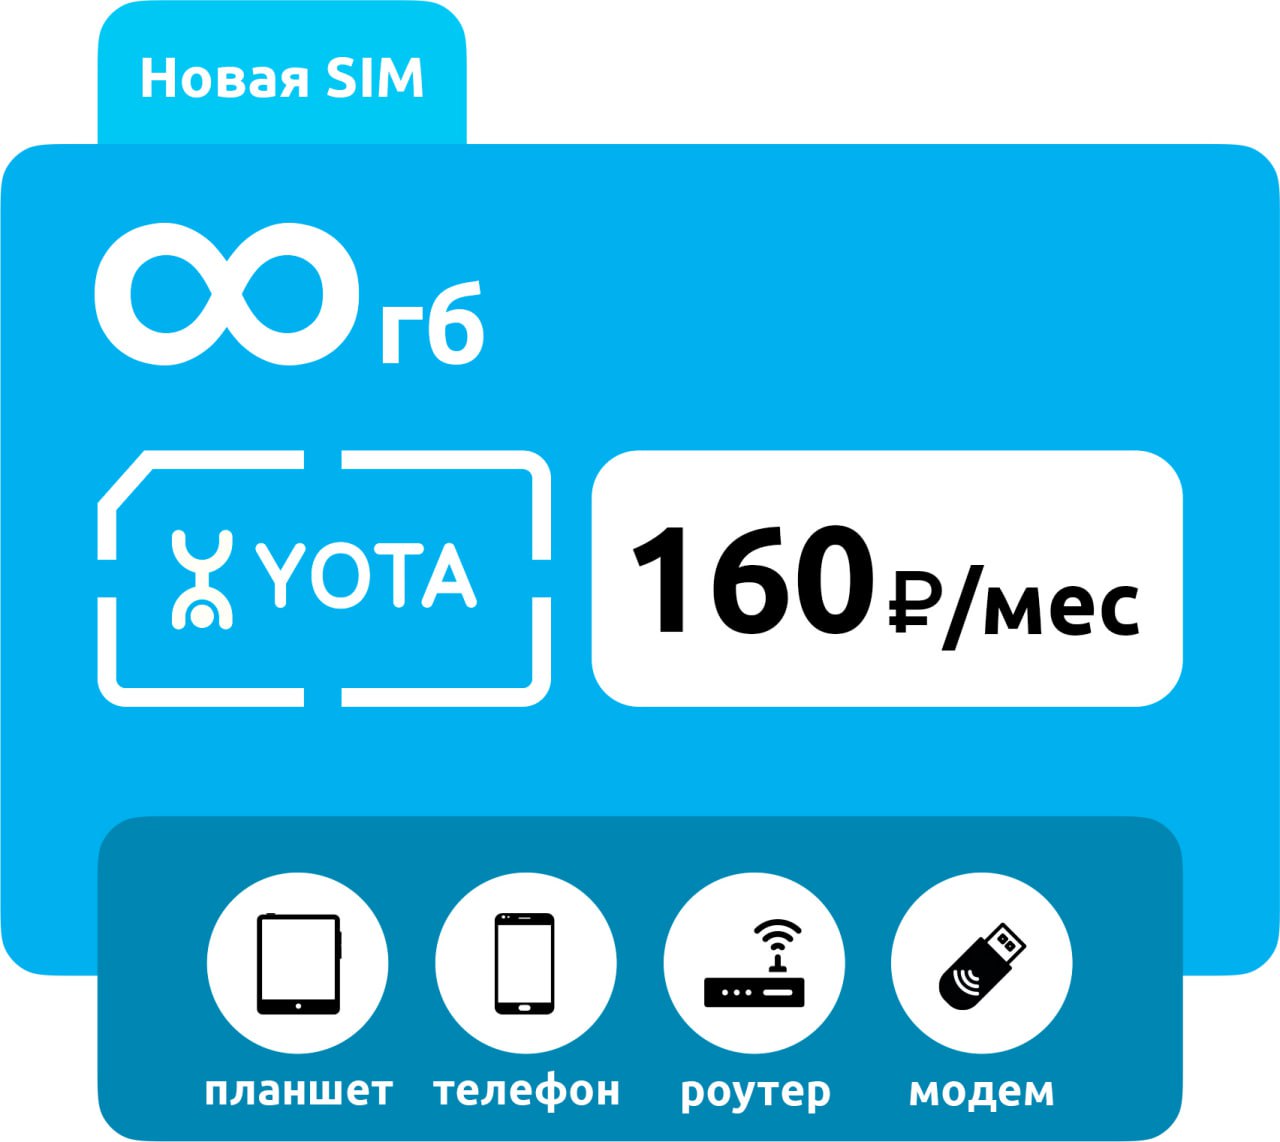 SIM-карта Yota 160 без раздачи (для любого устройства) фото